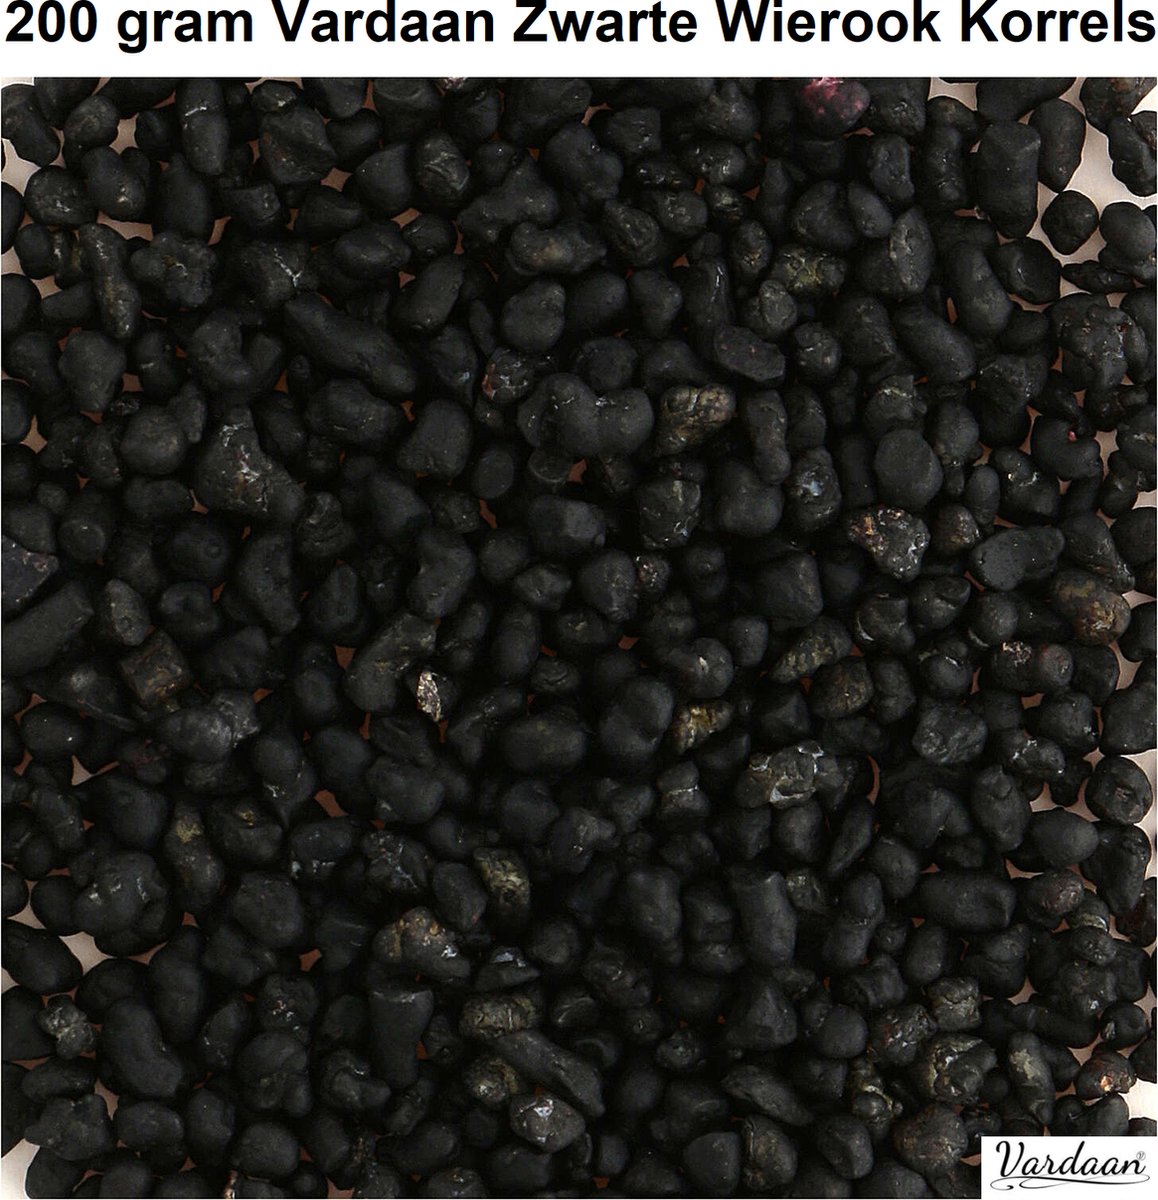 Zwarte Wierook Korrels - Liturgische Wierook Korrels - Aromatisch - 100% Natuurlijke Harsen - Vardaan Wierook Korrels - Bevat Plantextracten - 200 gram